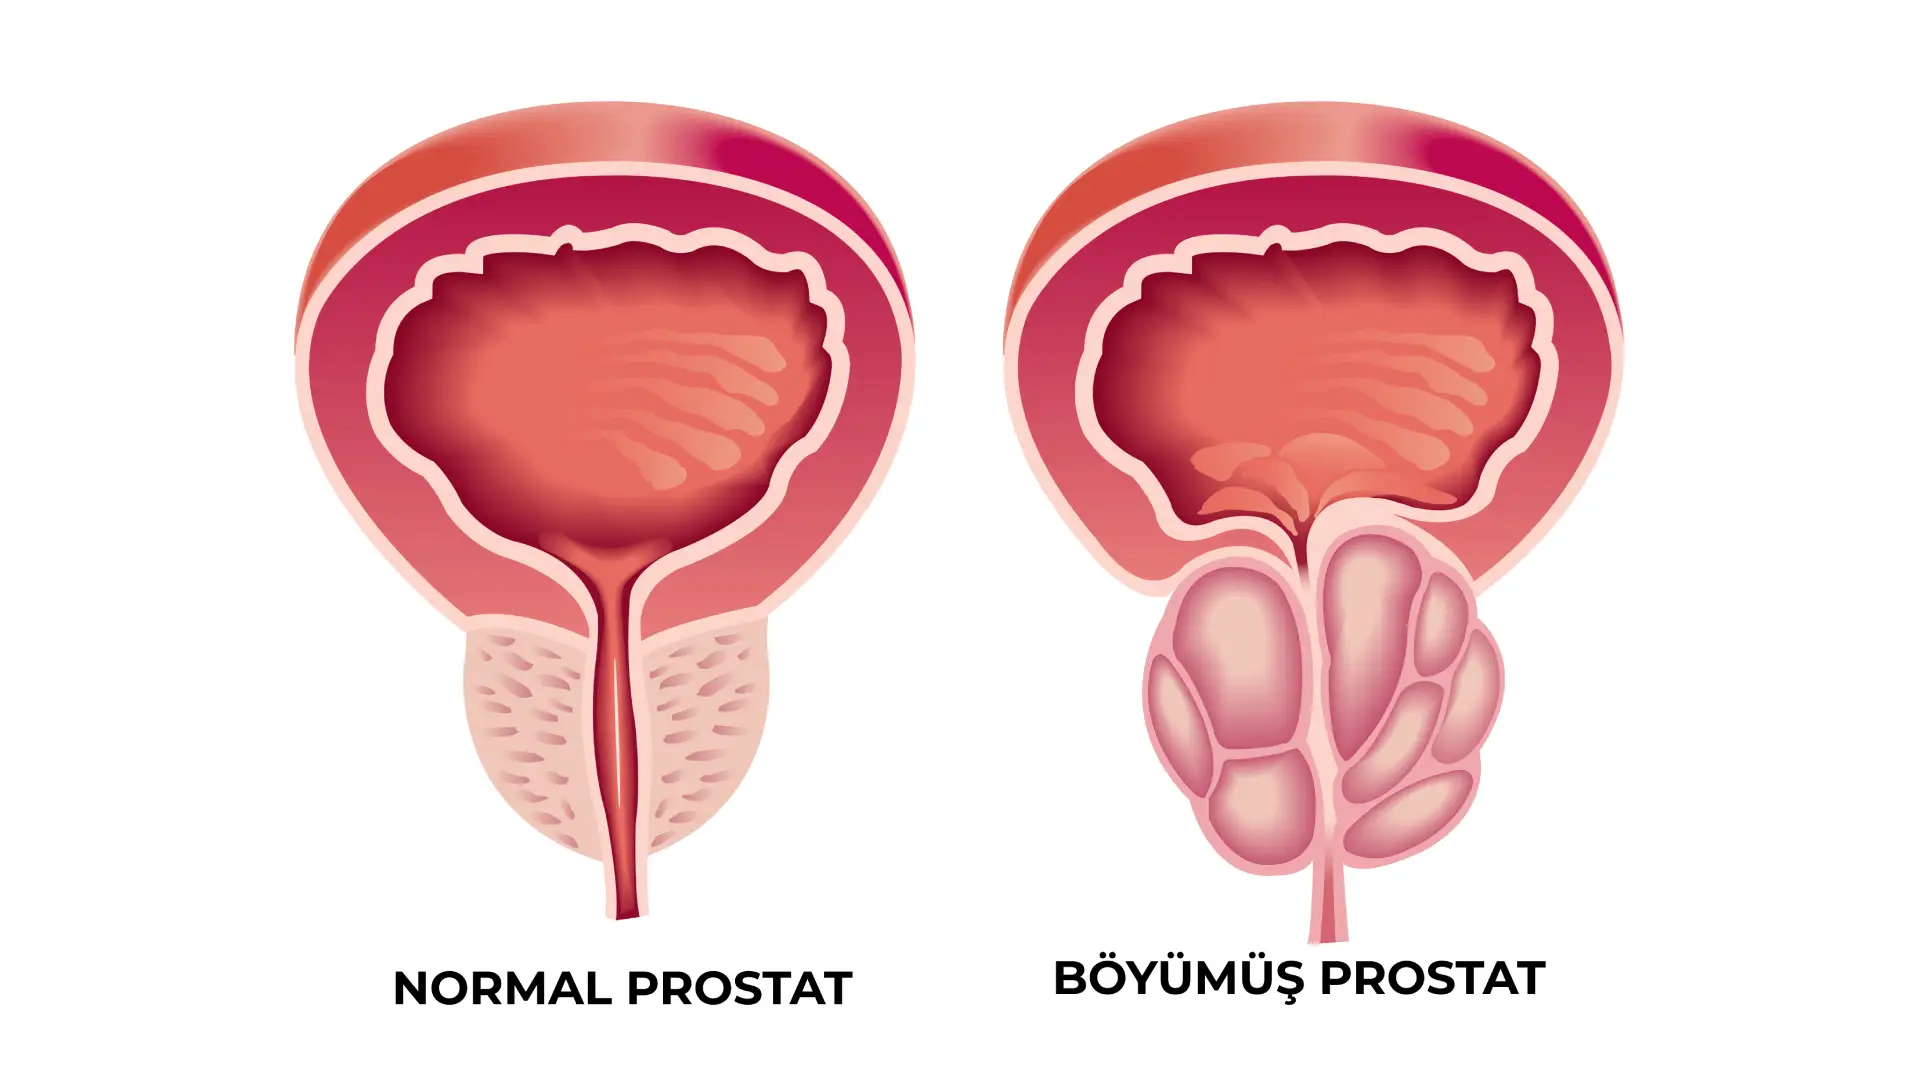 prostatin lazerle emeliyyati holep